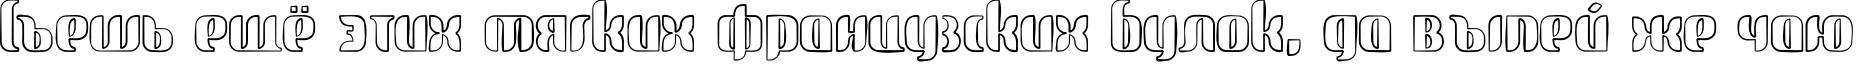 Пример написания шрифтом glide sketch sketch текста на русском